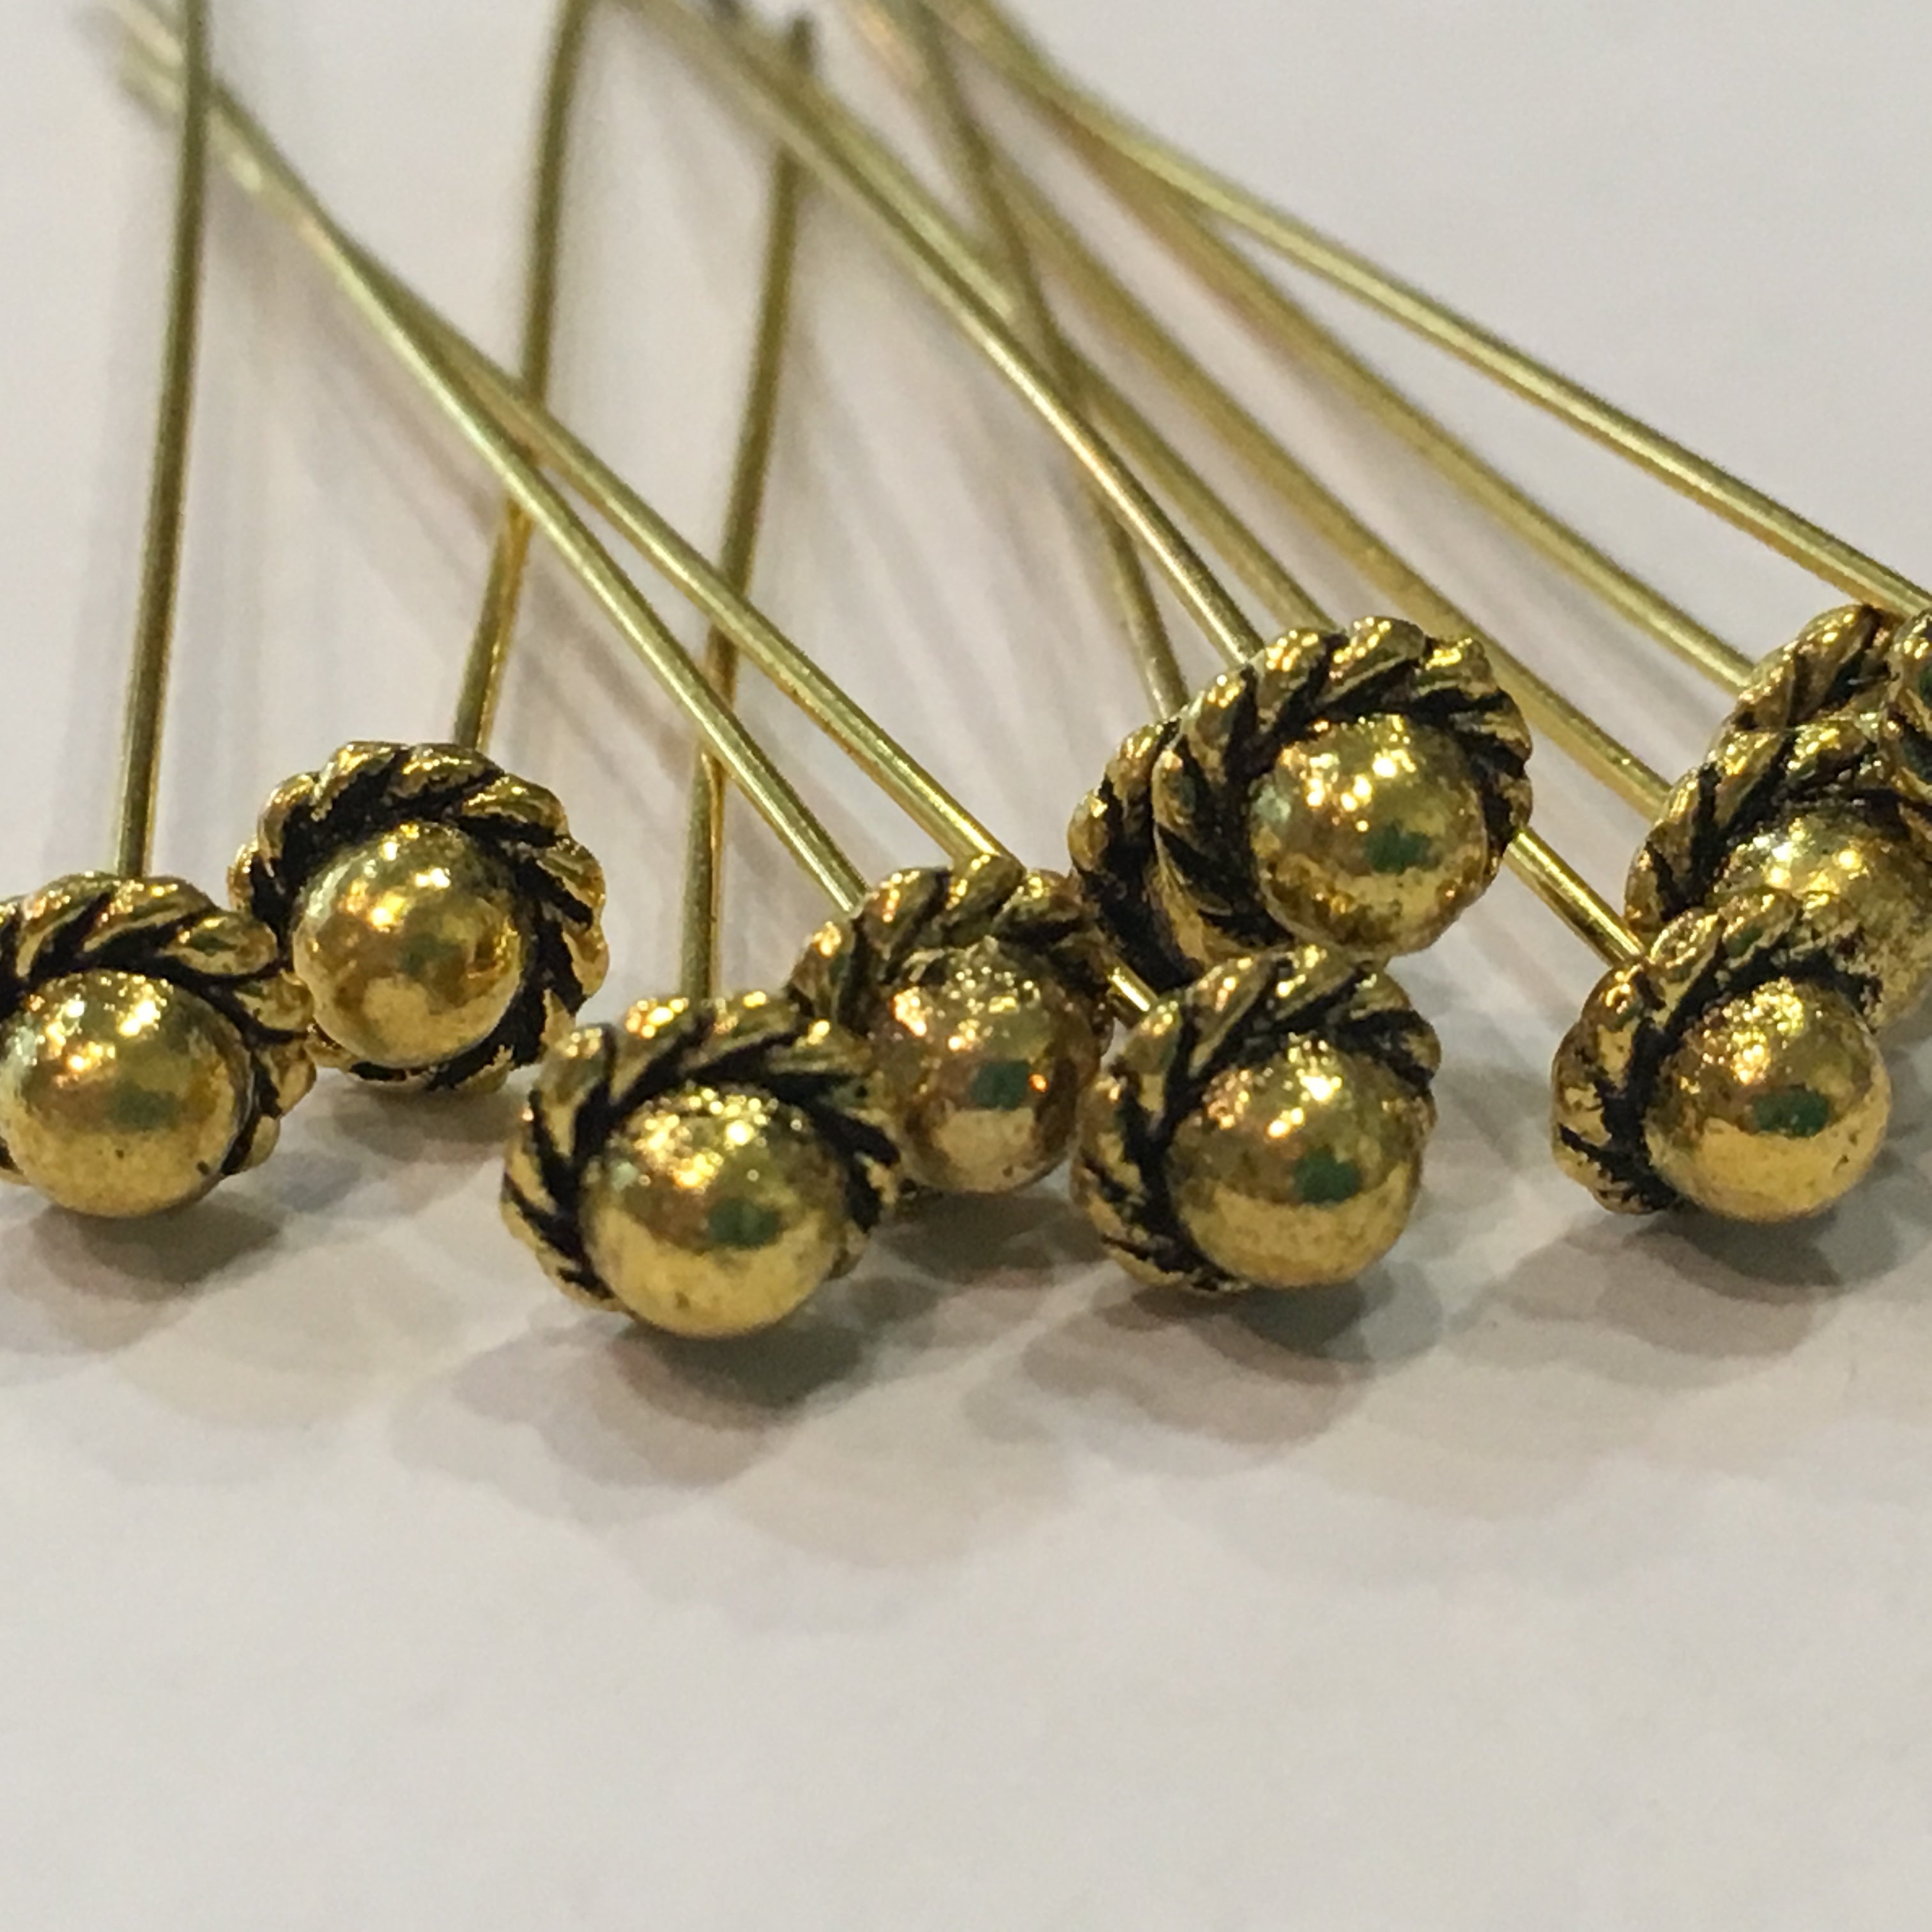 Antique Gold Bead Caps, 5 x 3 mm - 10 Caps –